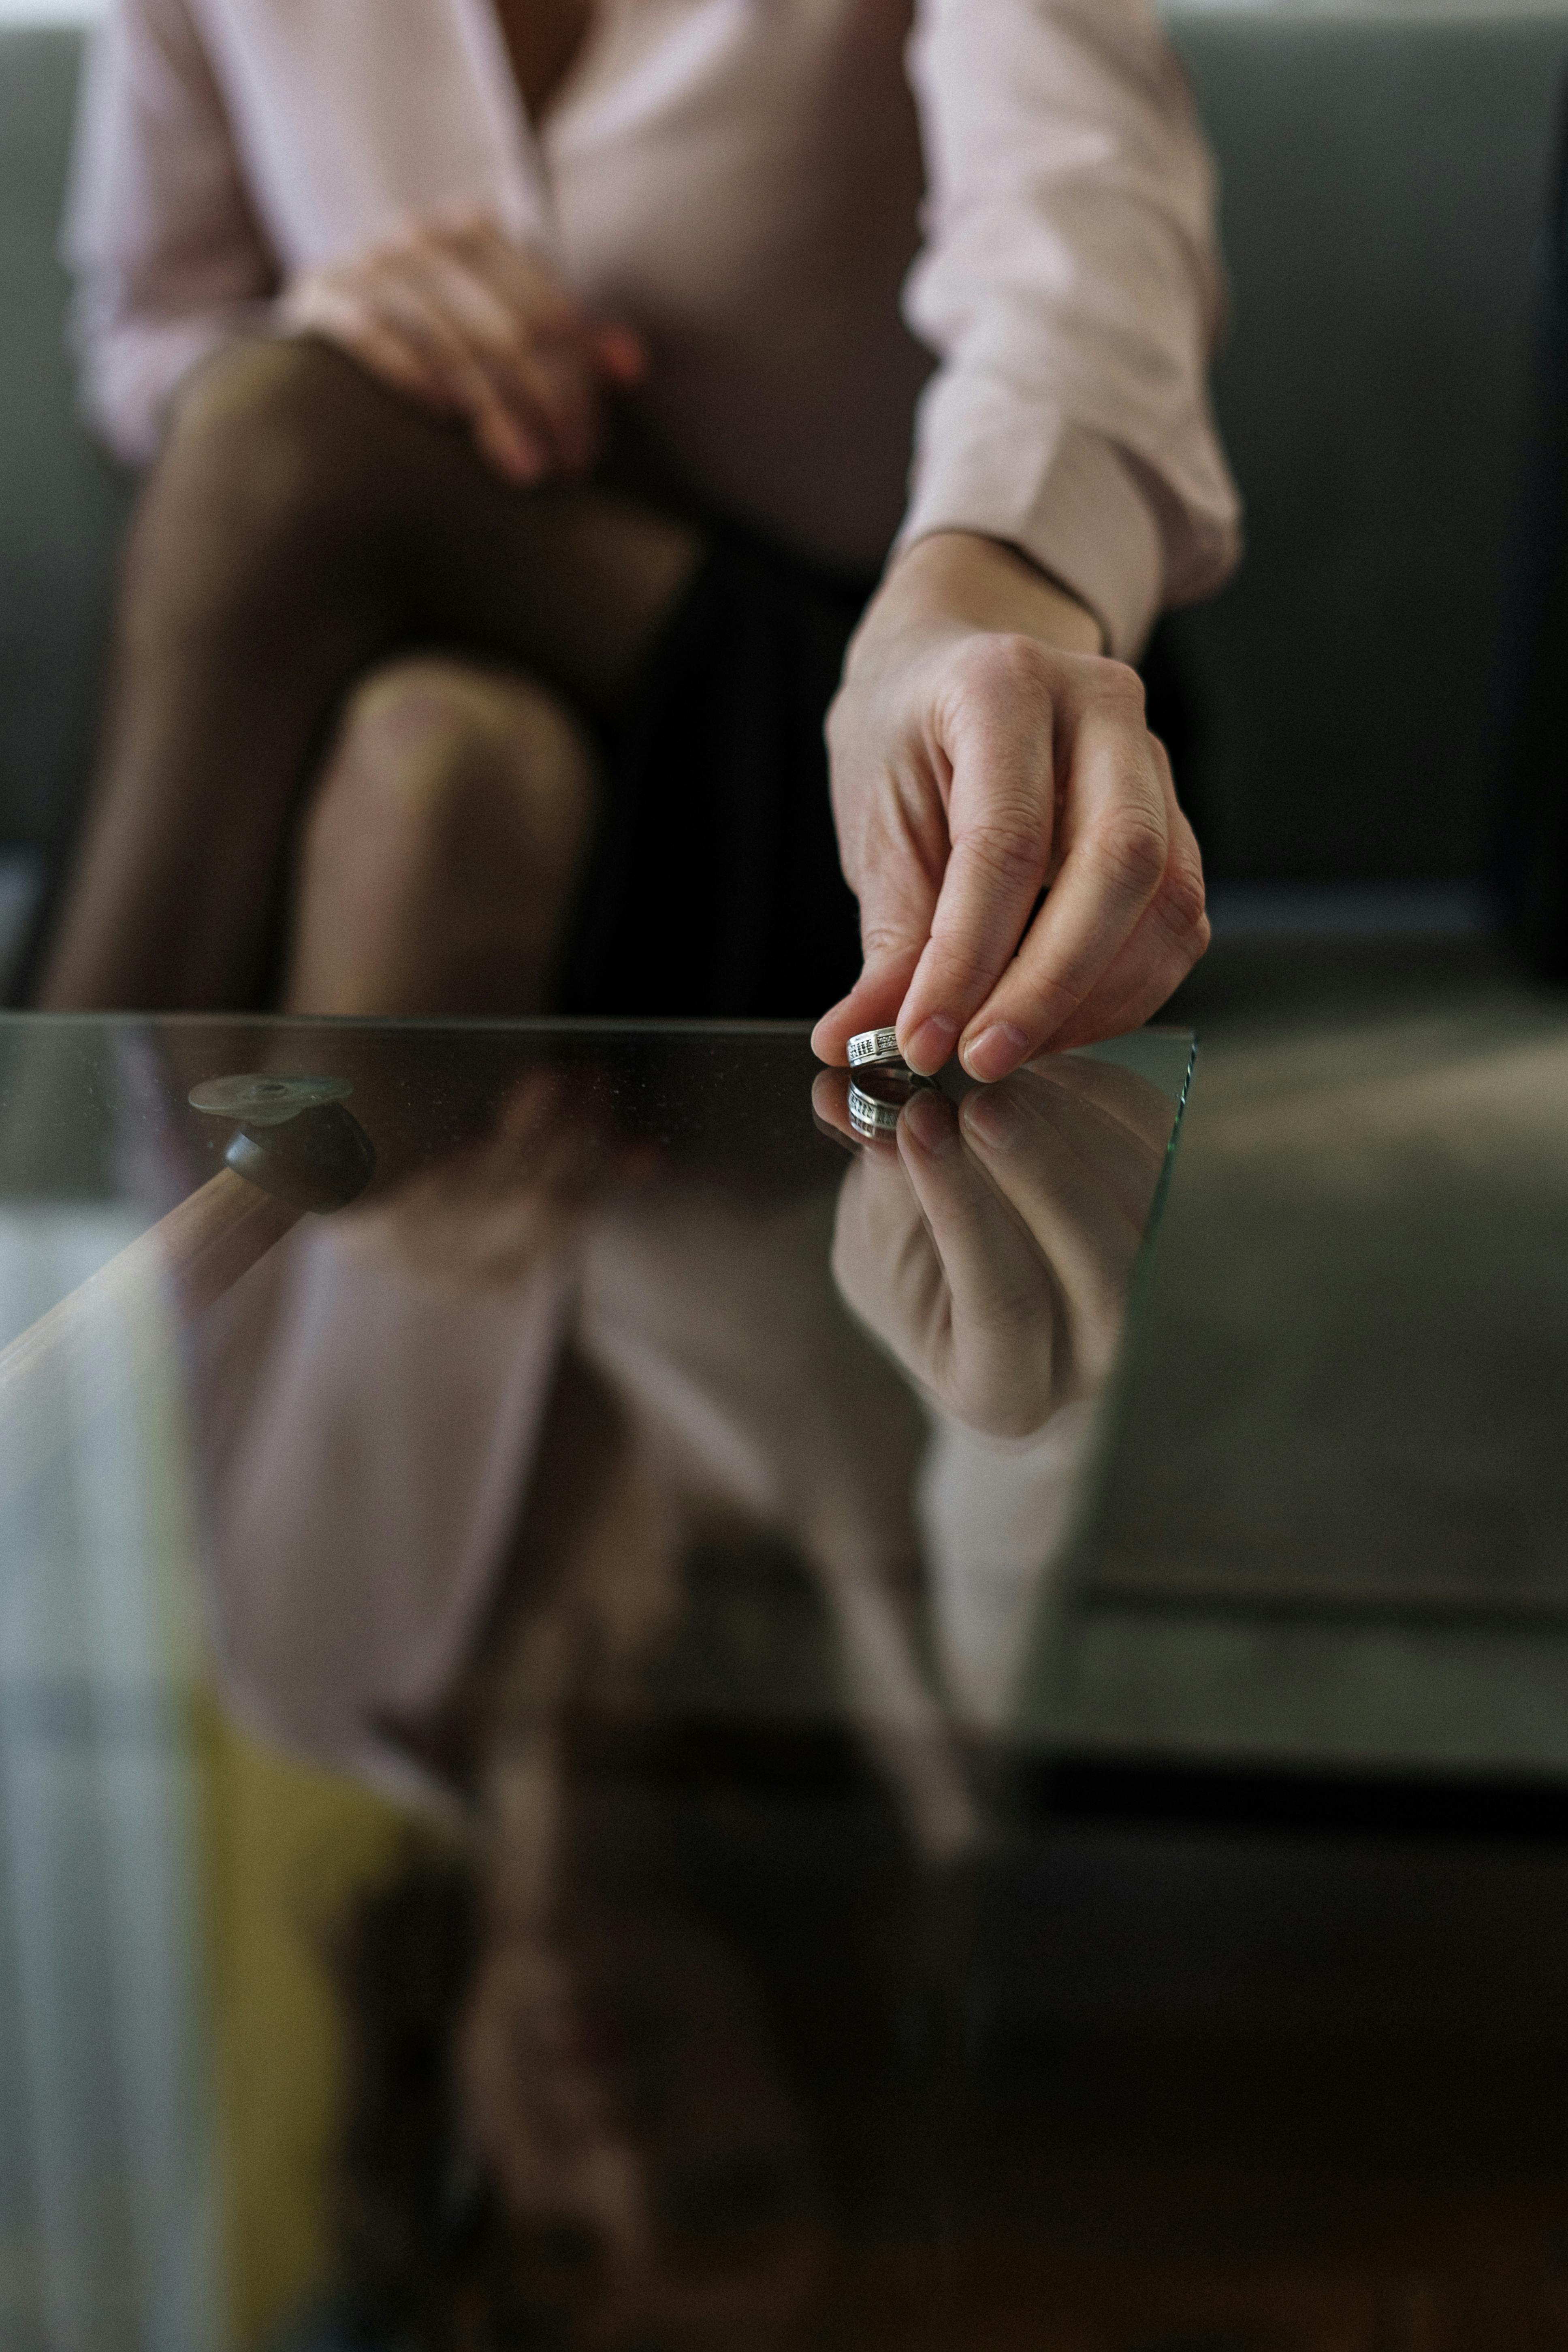 Frau lässt Ring auf dem Tisch liegen | Quelle: Pexels